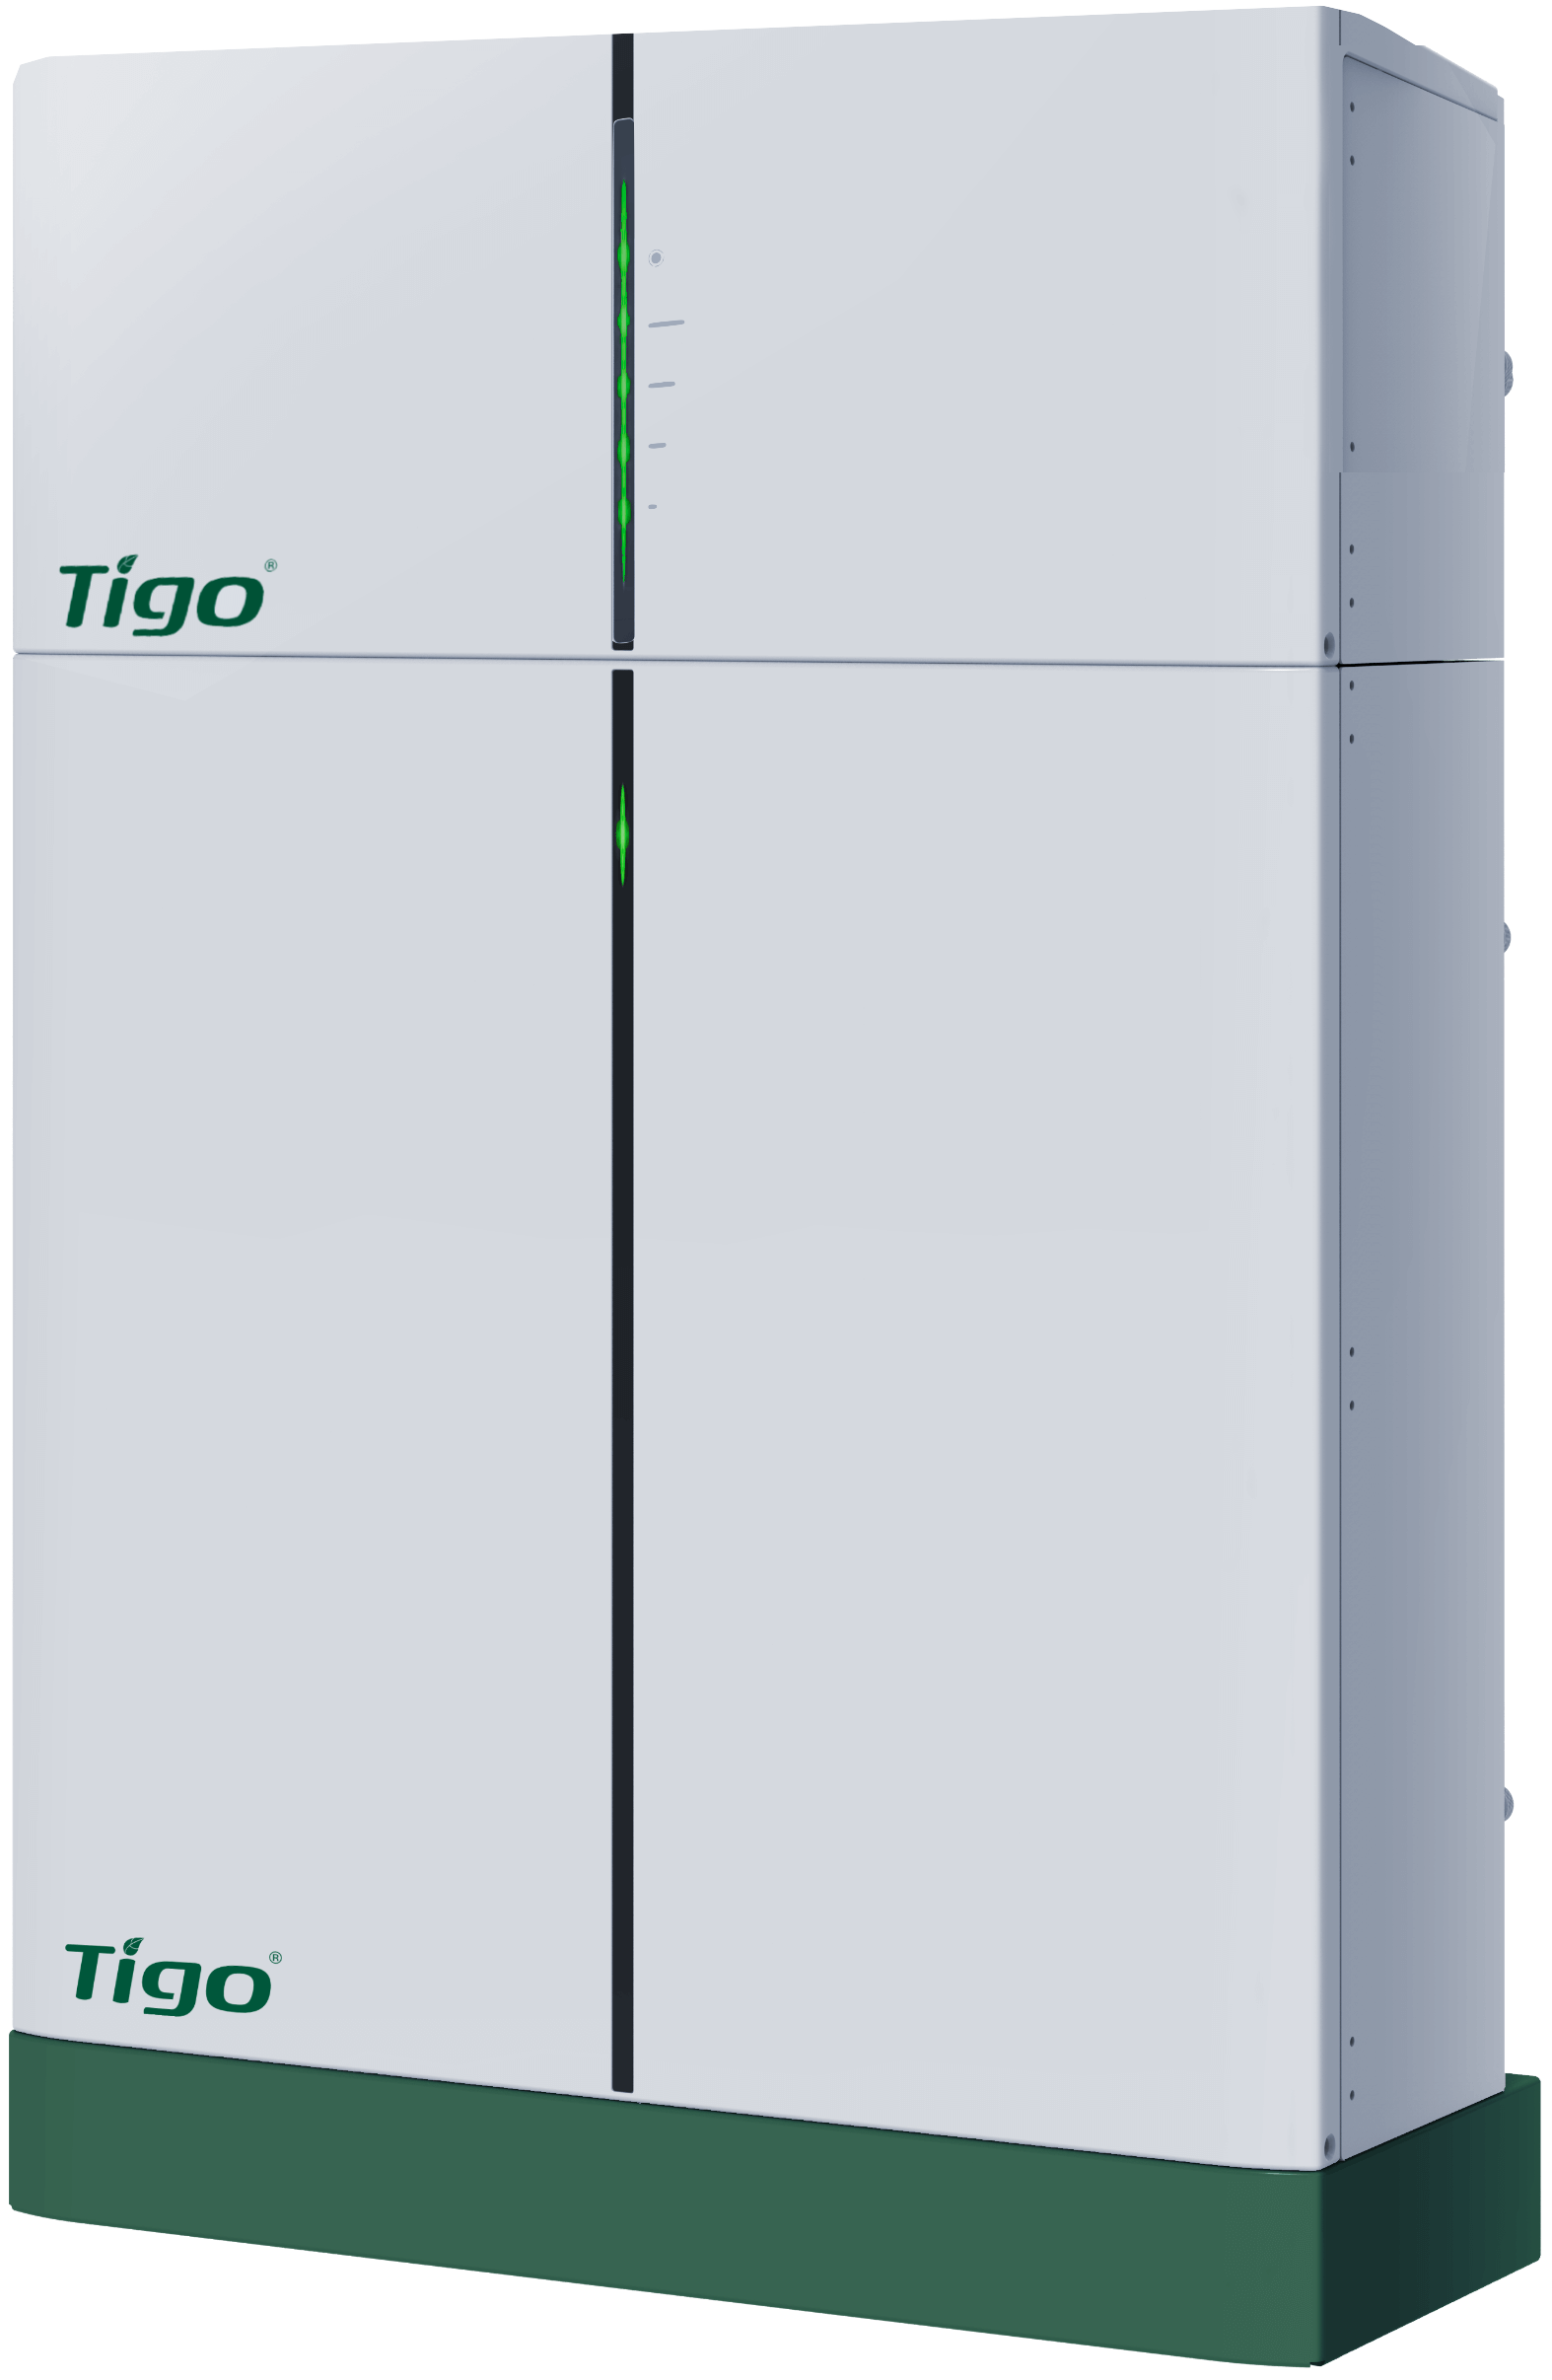 FAQs – Tigo EI Battery (EU) – Tigo Help Center